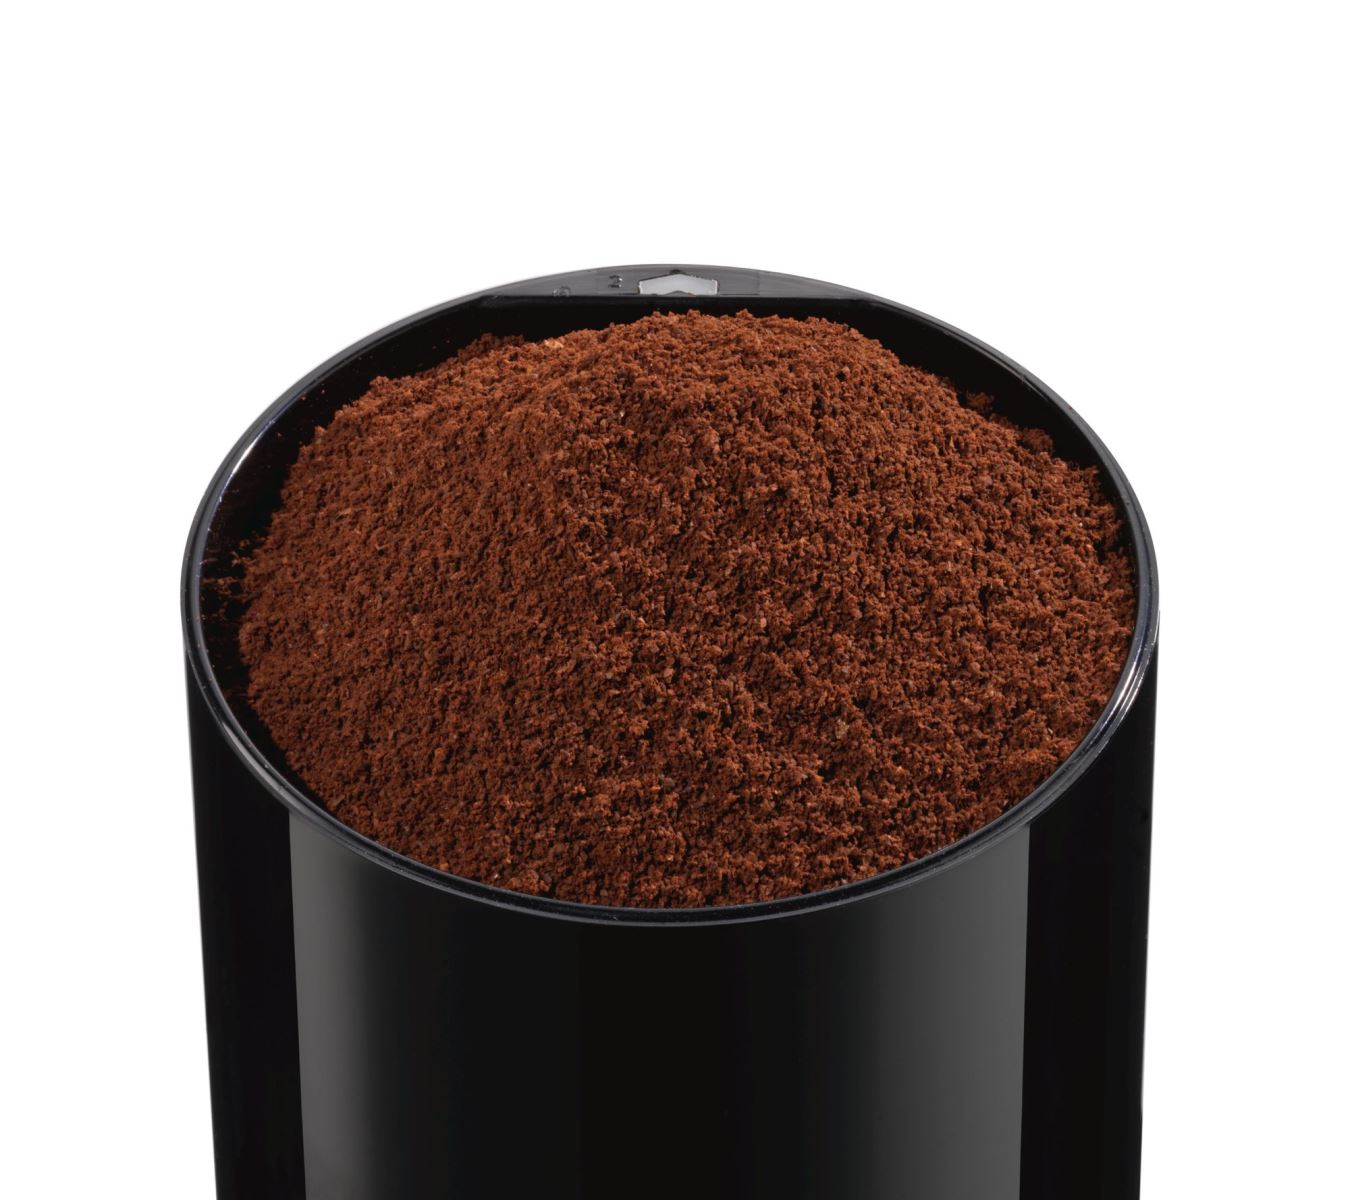 Rasnita de cafea Bosch TSM6A013B